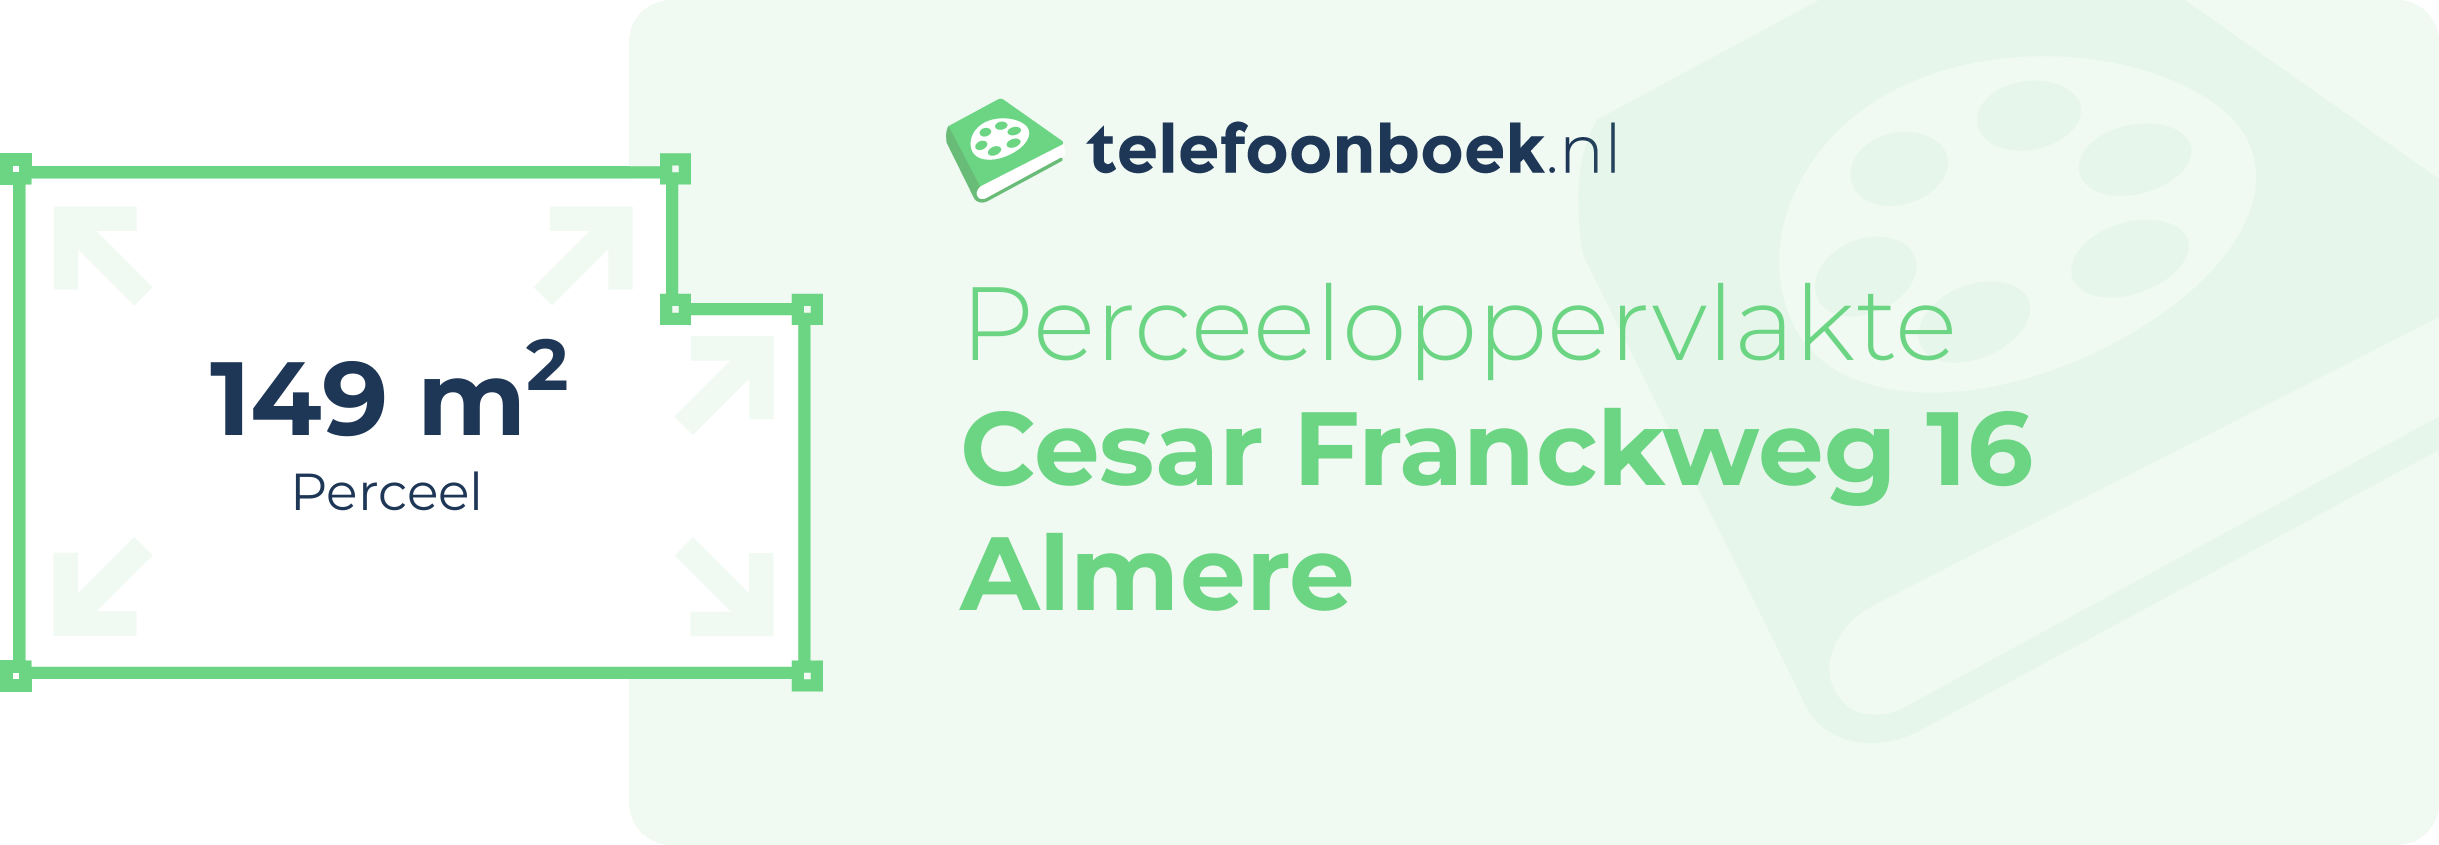 Perceeloppervlakte Cesar Franckweg 16 Almere